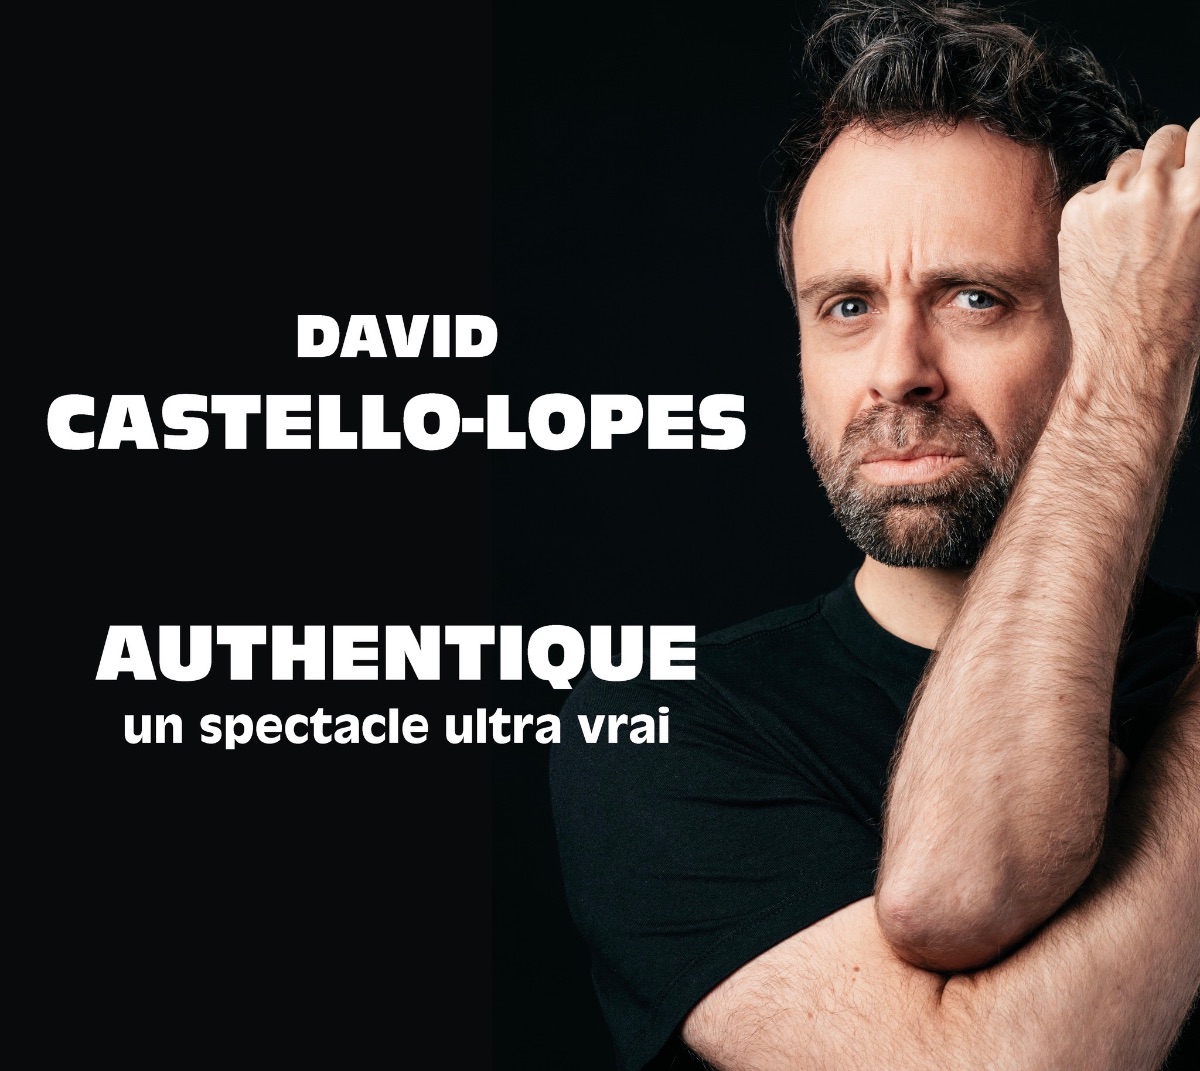 David CASTELLO-LOPEZ - "Authentique" au Forum de LIEGE